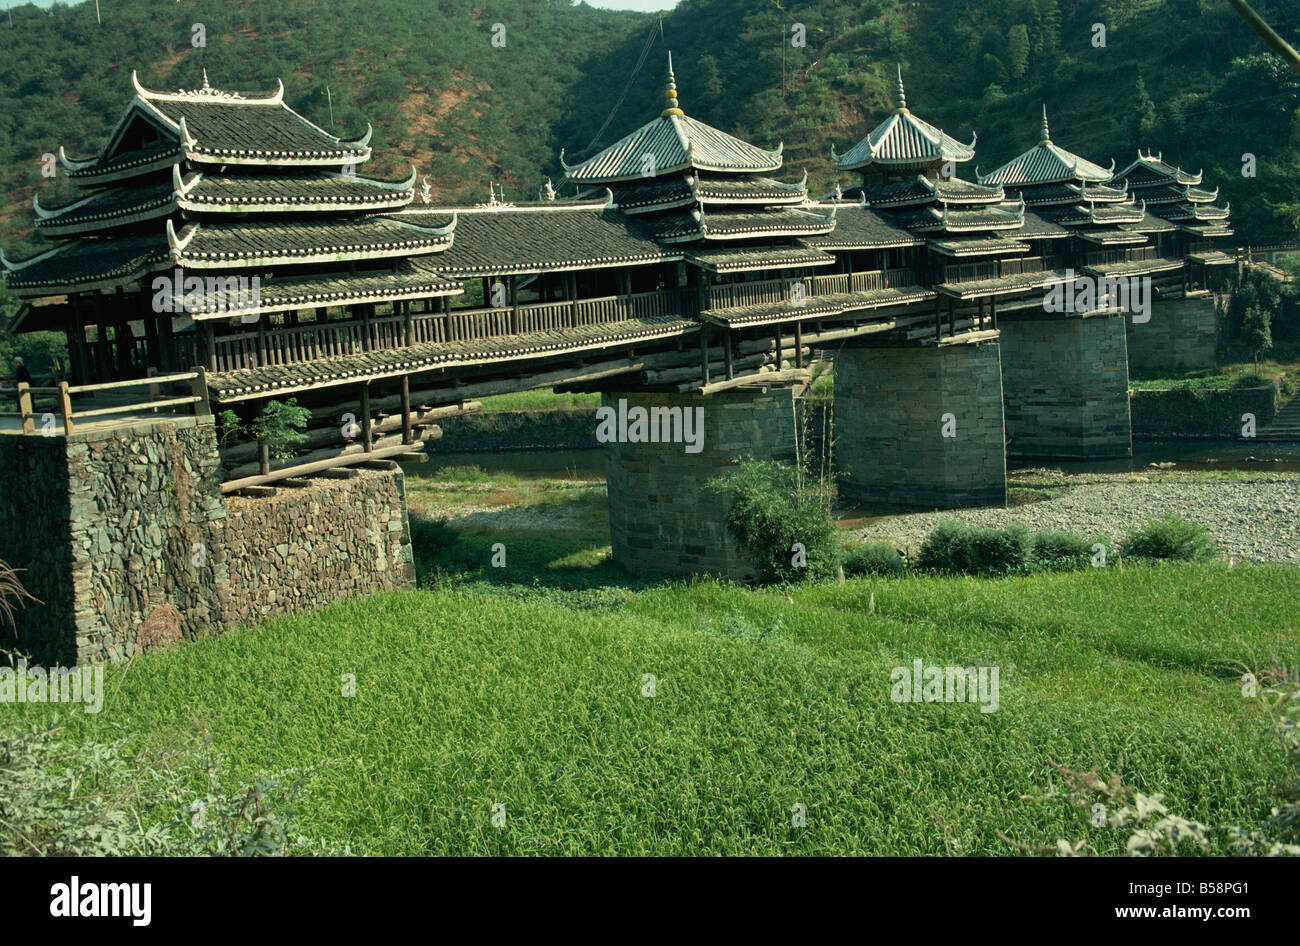 Dong le vent et l'eau International Bridge Bridge dans la province de Guangxi Chine Asie Banque D'Images